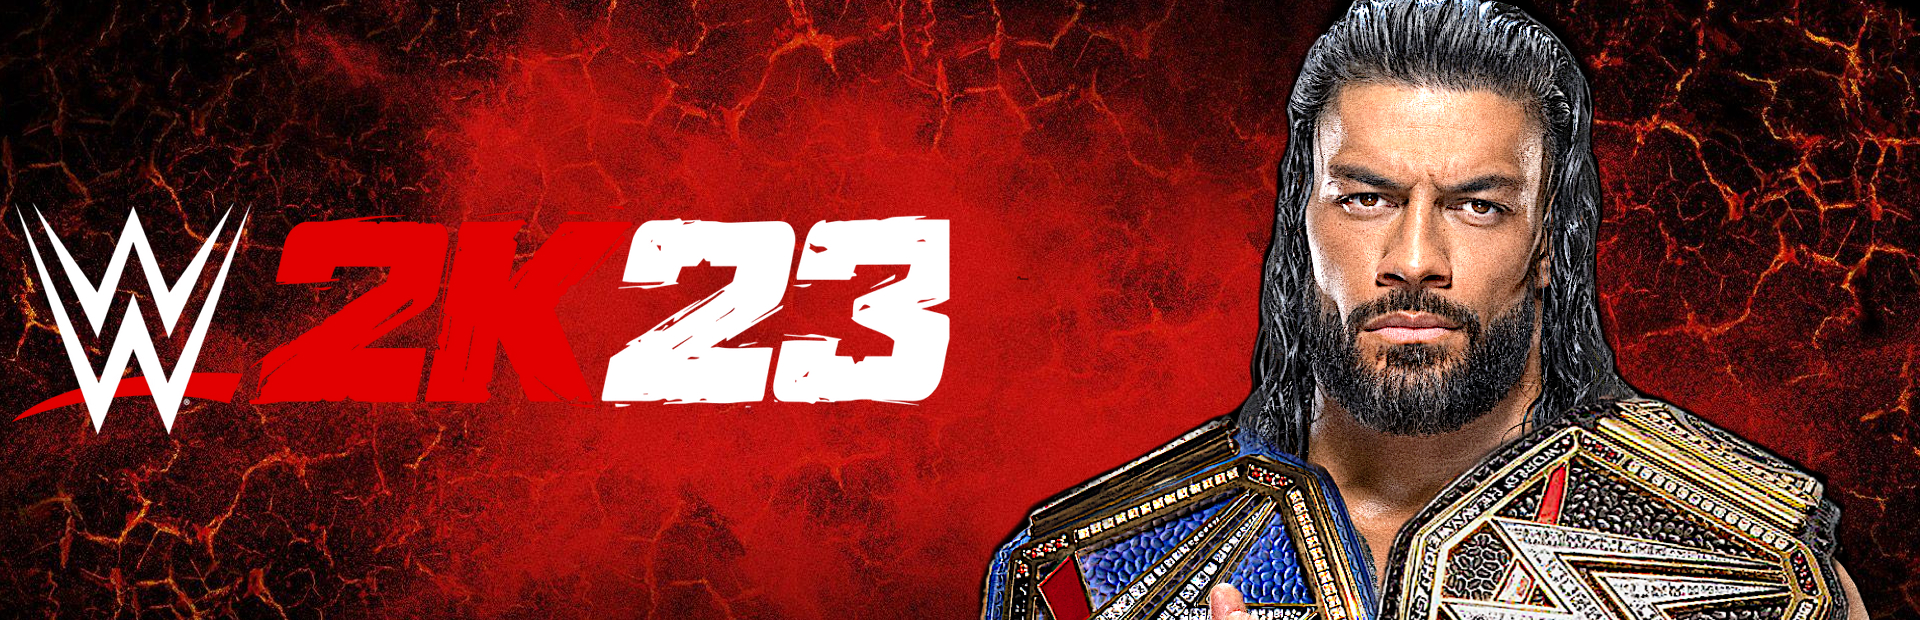 دانلود بازی WWE 2K23 برای کامپیوتر | گیمباتو